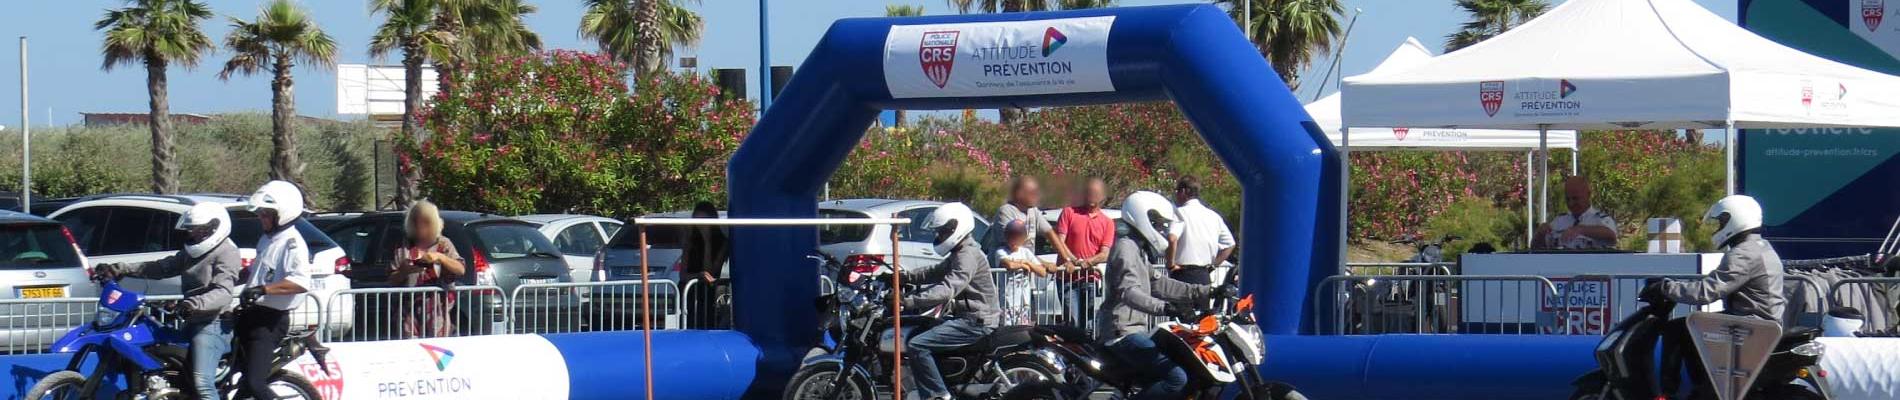 Initiation au deux-roues : les jeunes en piste pour la sécurité à Annecy (74), du 12 au 16 juin